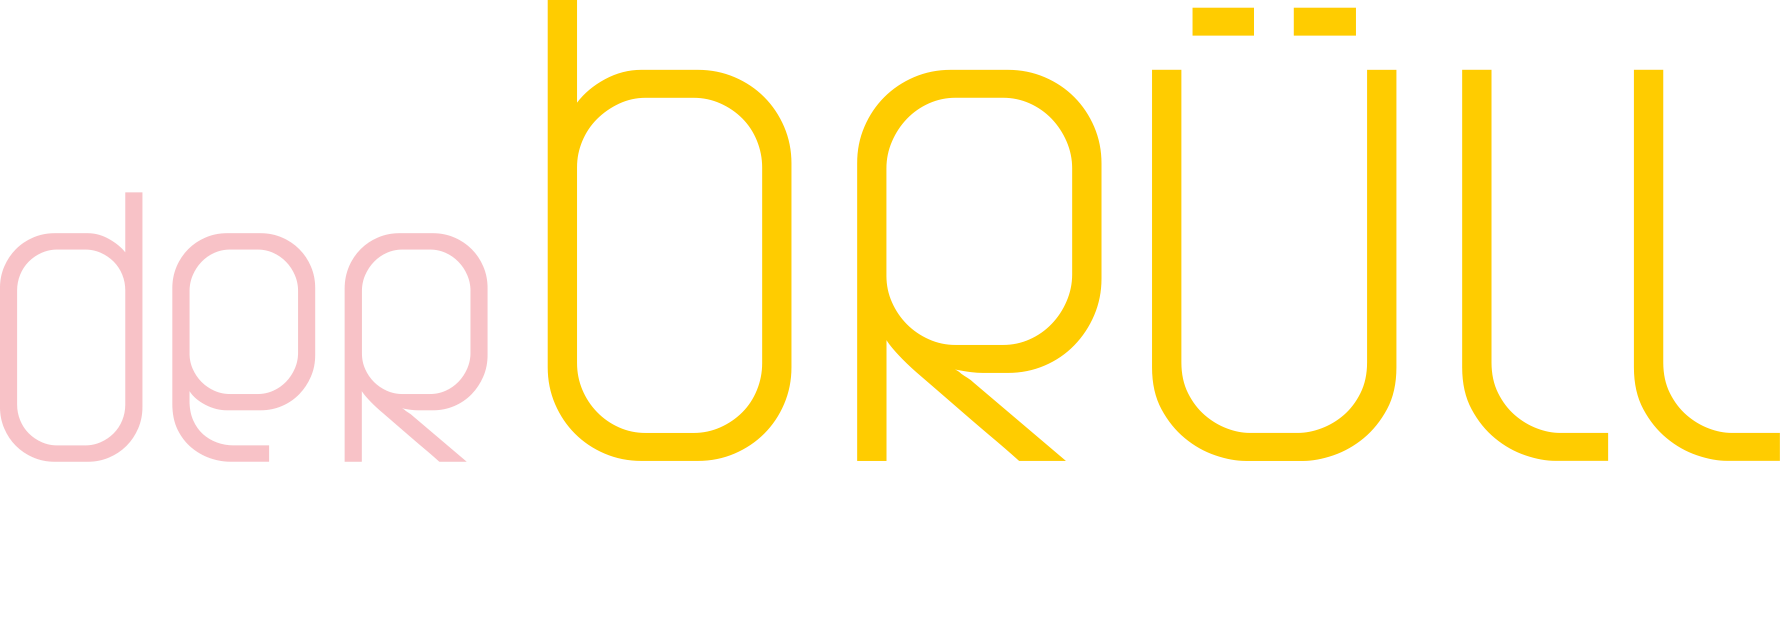 Logo-der-Bruell-HOME.png